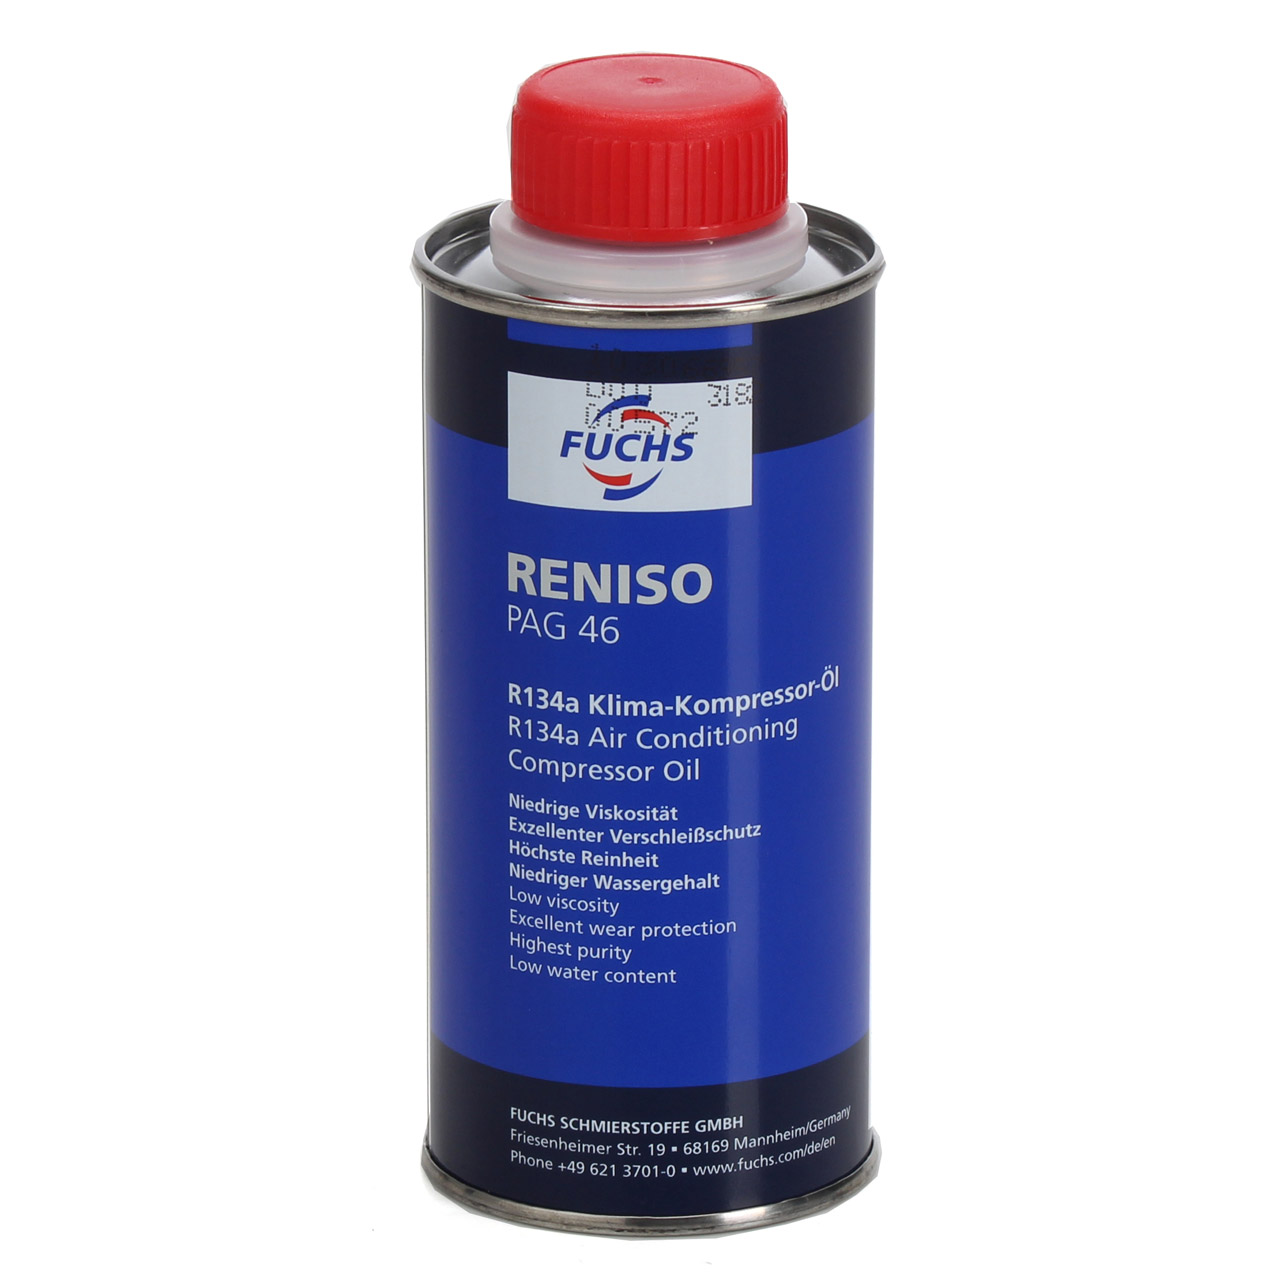 4x 250ml FUCHS RENISO PAG 46 R134a Kompressor Öl Kompressoröl Klimaanlagenöl